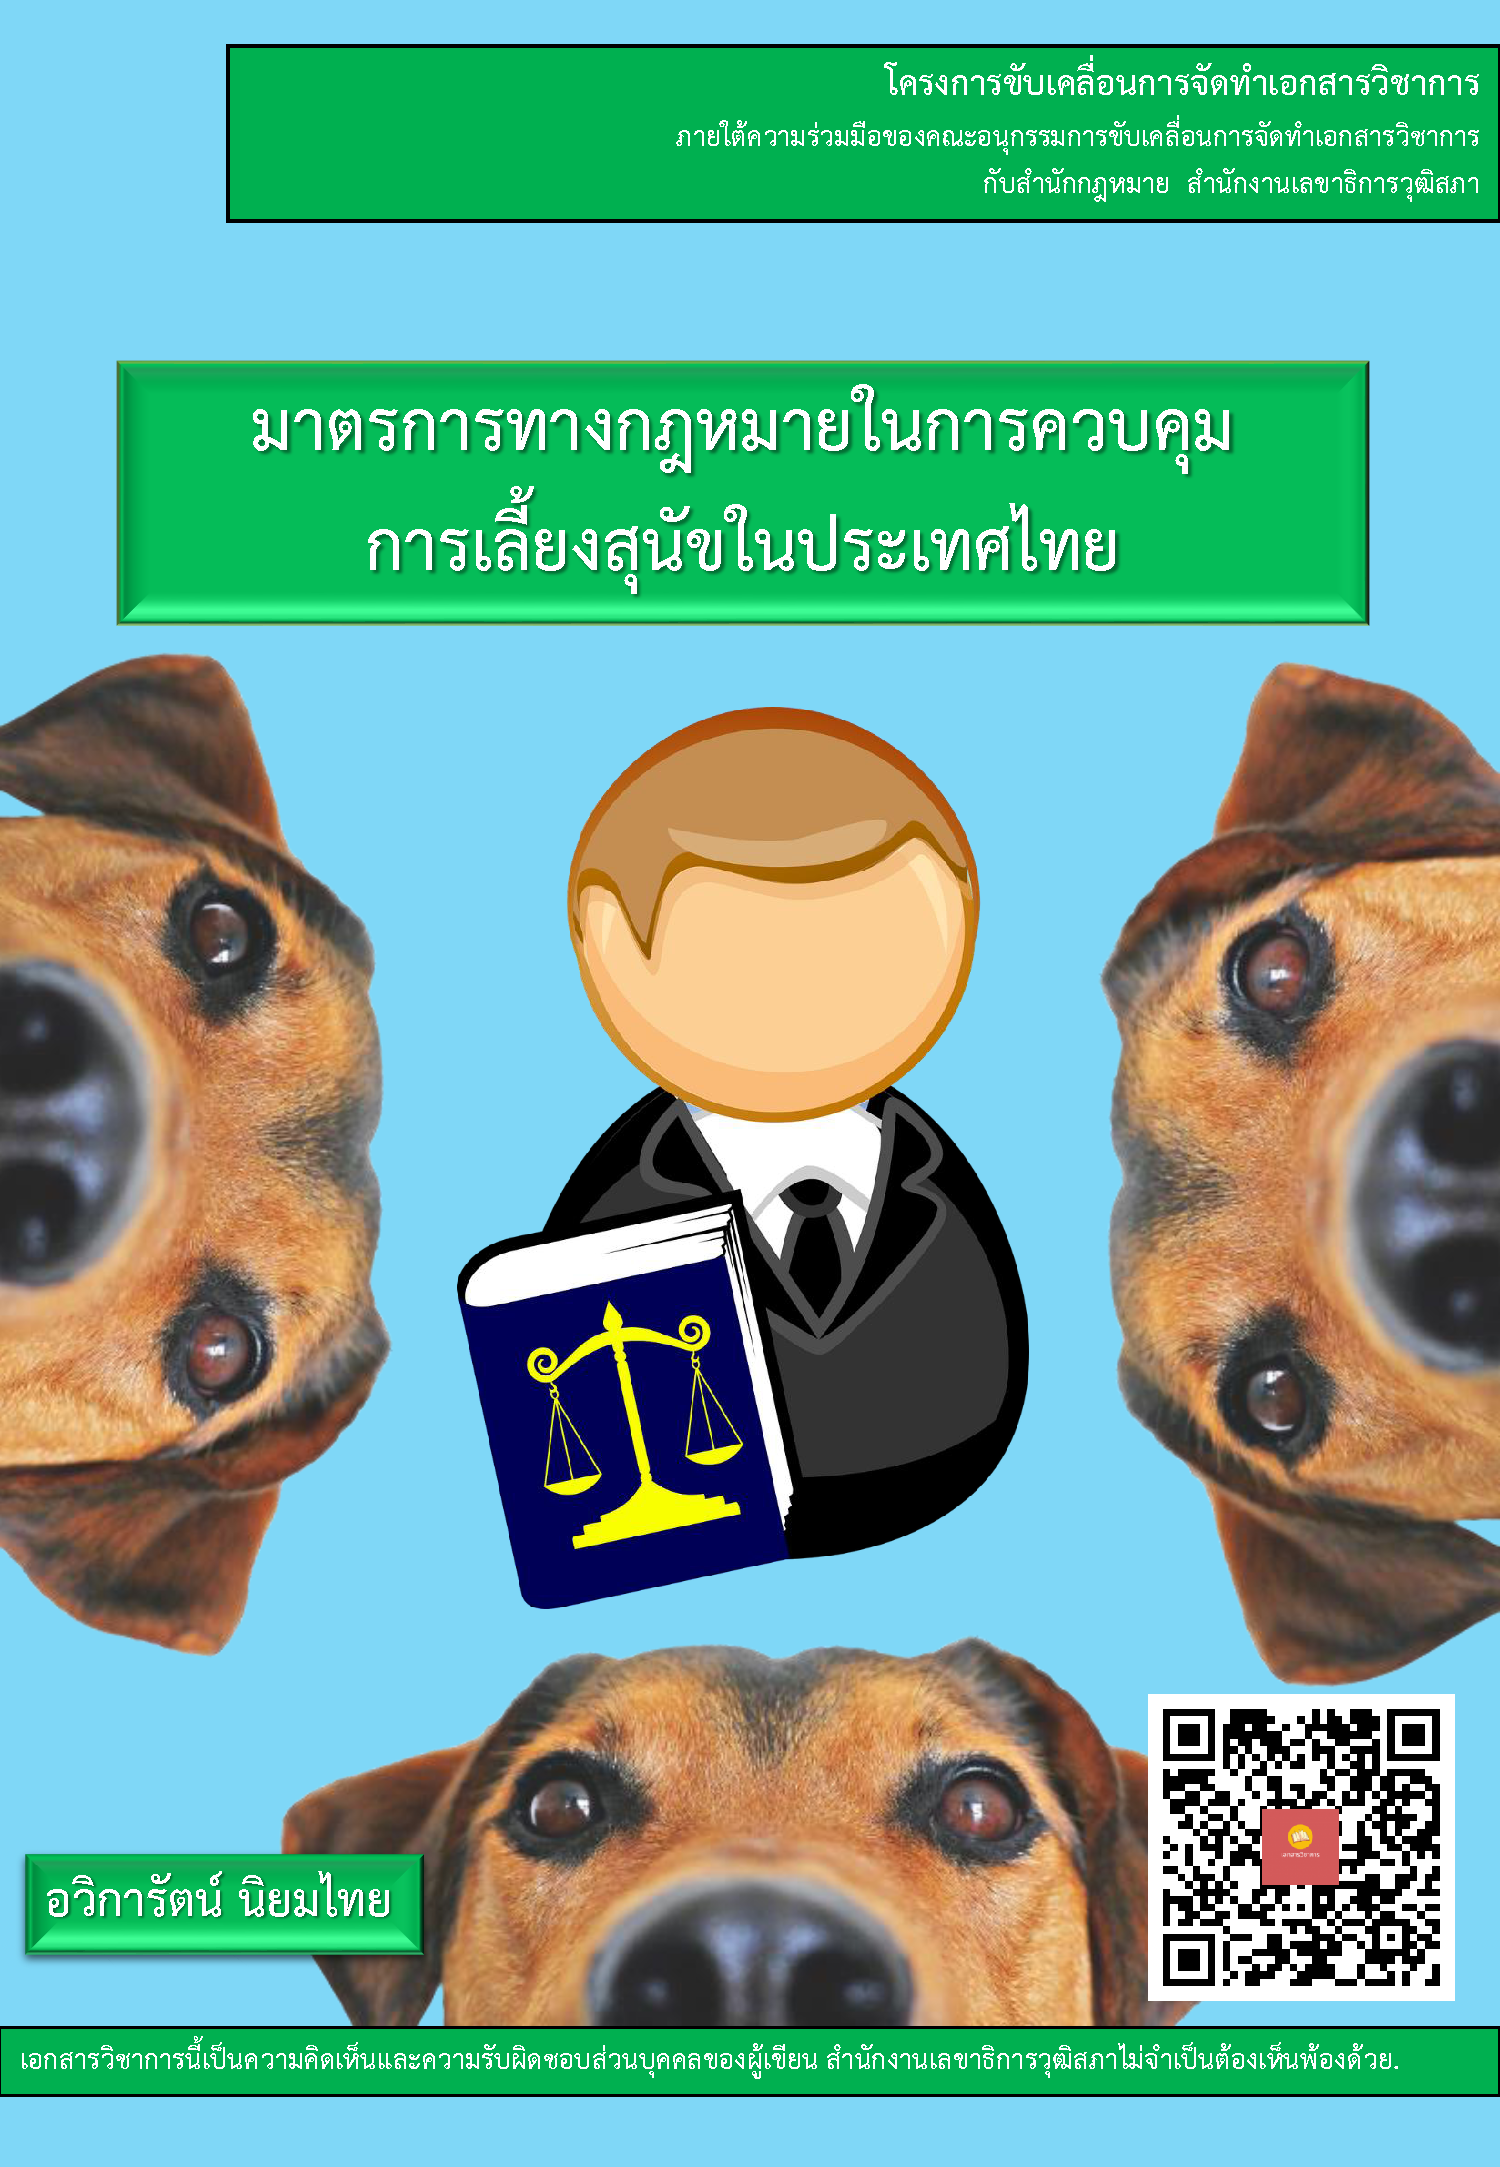  บทความวิชาการ เรื่อง "มาตรการทางกฎหมายในการควบคุมการเลี้ยงสุนัขในประเทศไทย"